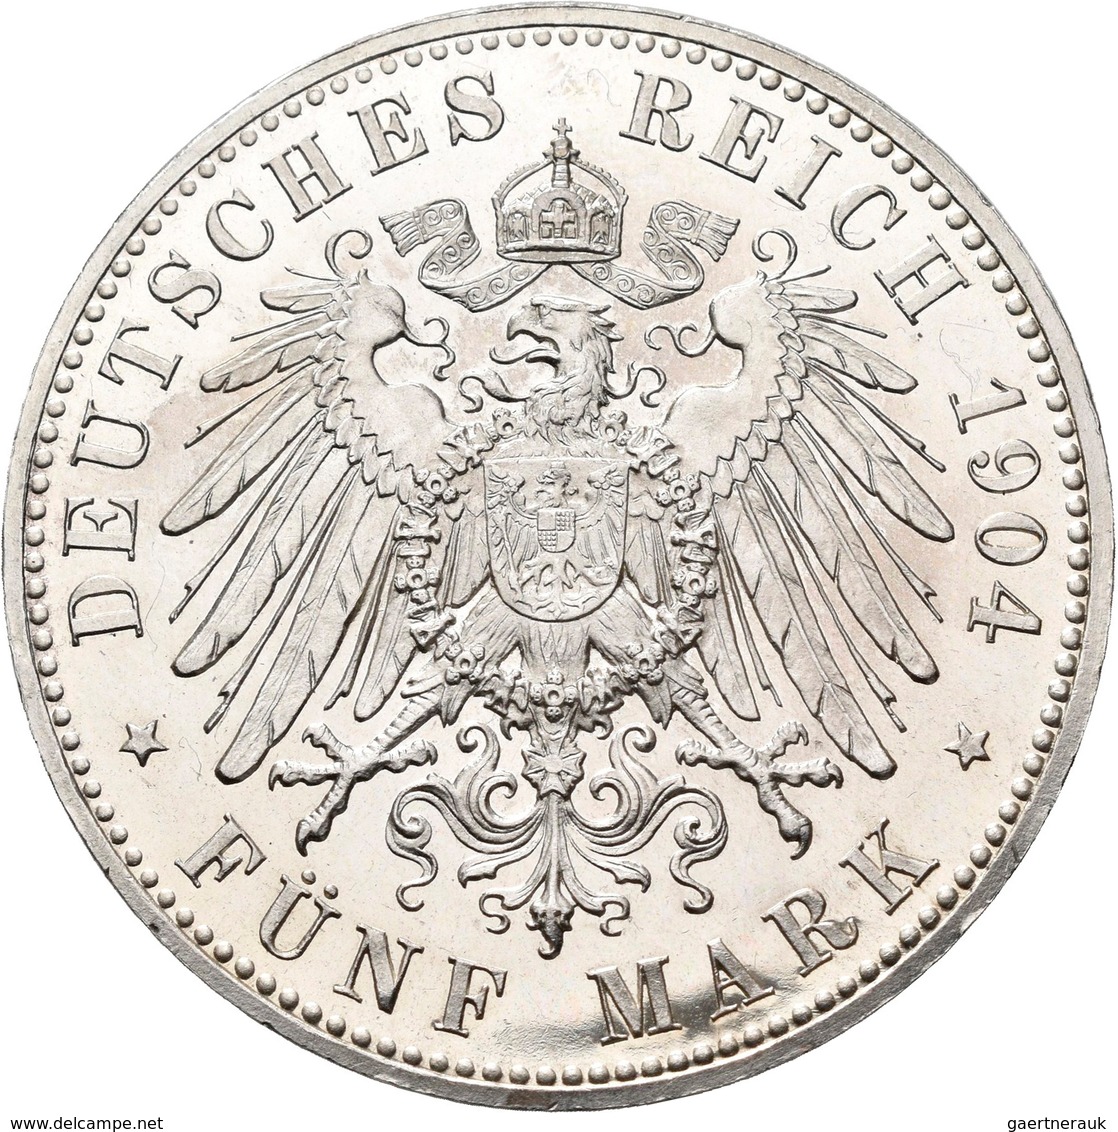 Mecklenburg-Schwerin: Friedrich Franz IV. 1901-1918: 5 Mark 1904 A, Zur Hochzeit Mit Alexandra, Jaeg - Taler En Doppeltaler